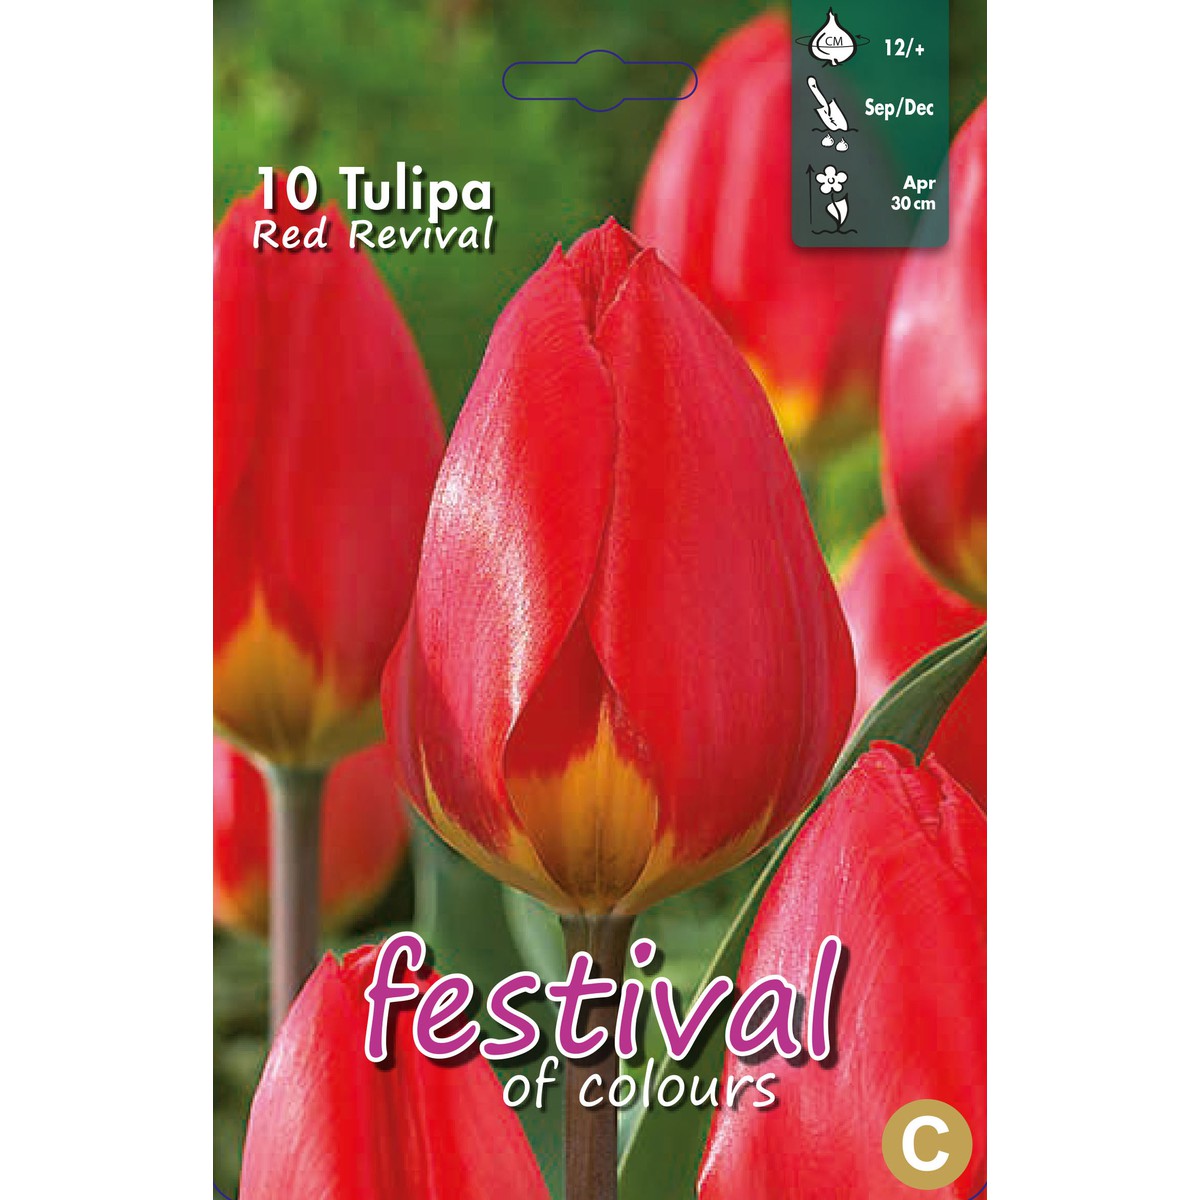   Tulipes 'Red Revival'  10 pcs 12/